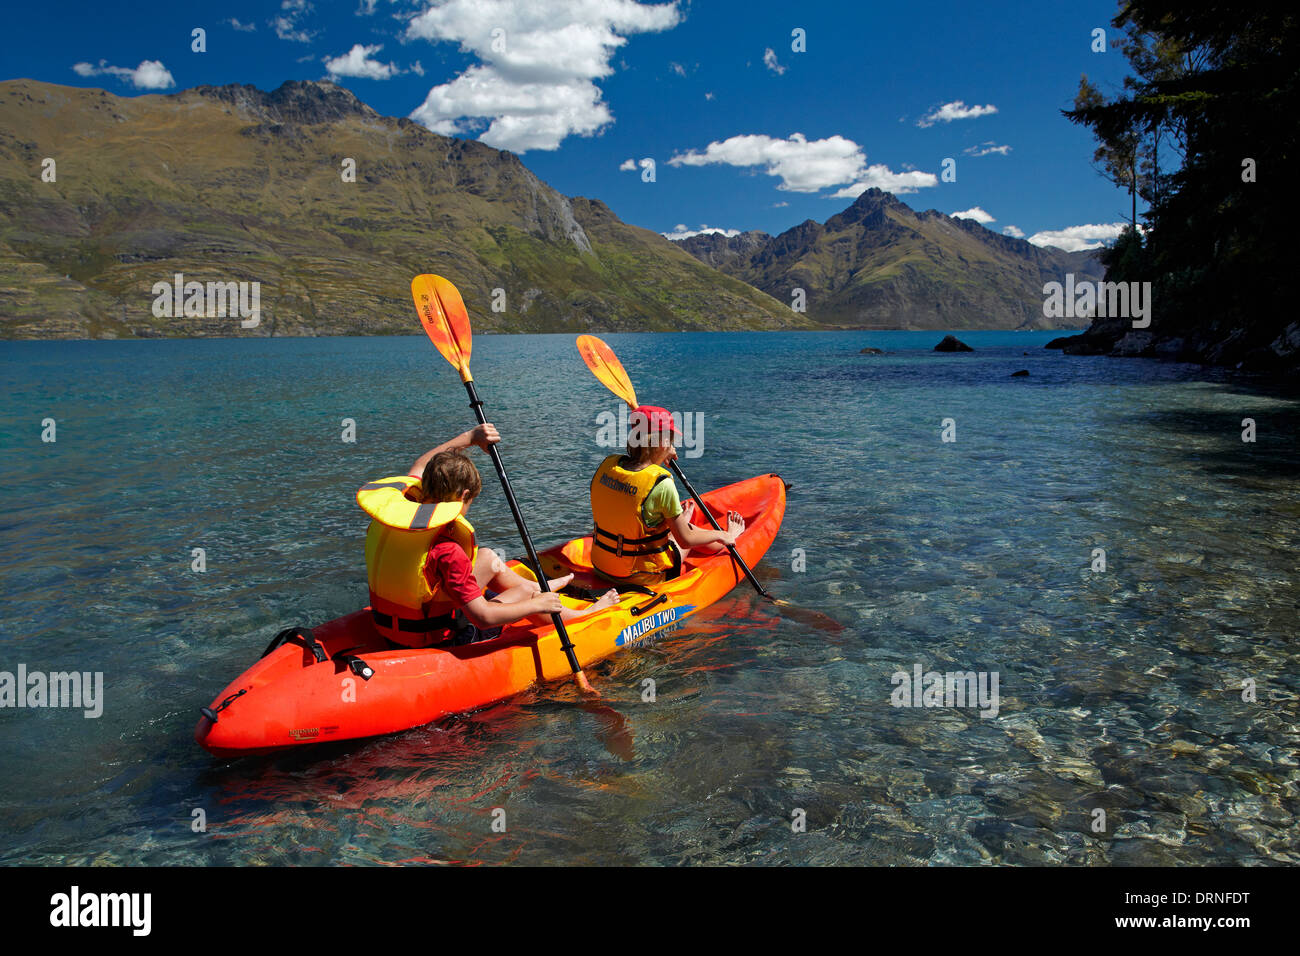 Les enfants en kayak, Sunshine Bay, Lake Wakatipu, Queenstown, Otago, île du Sud, Nouvelle-Zélande Banque D'Images